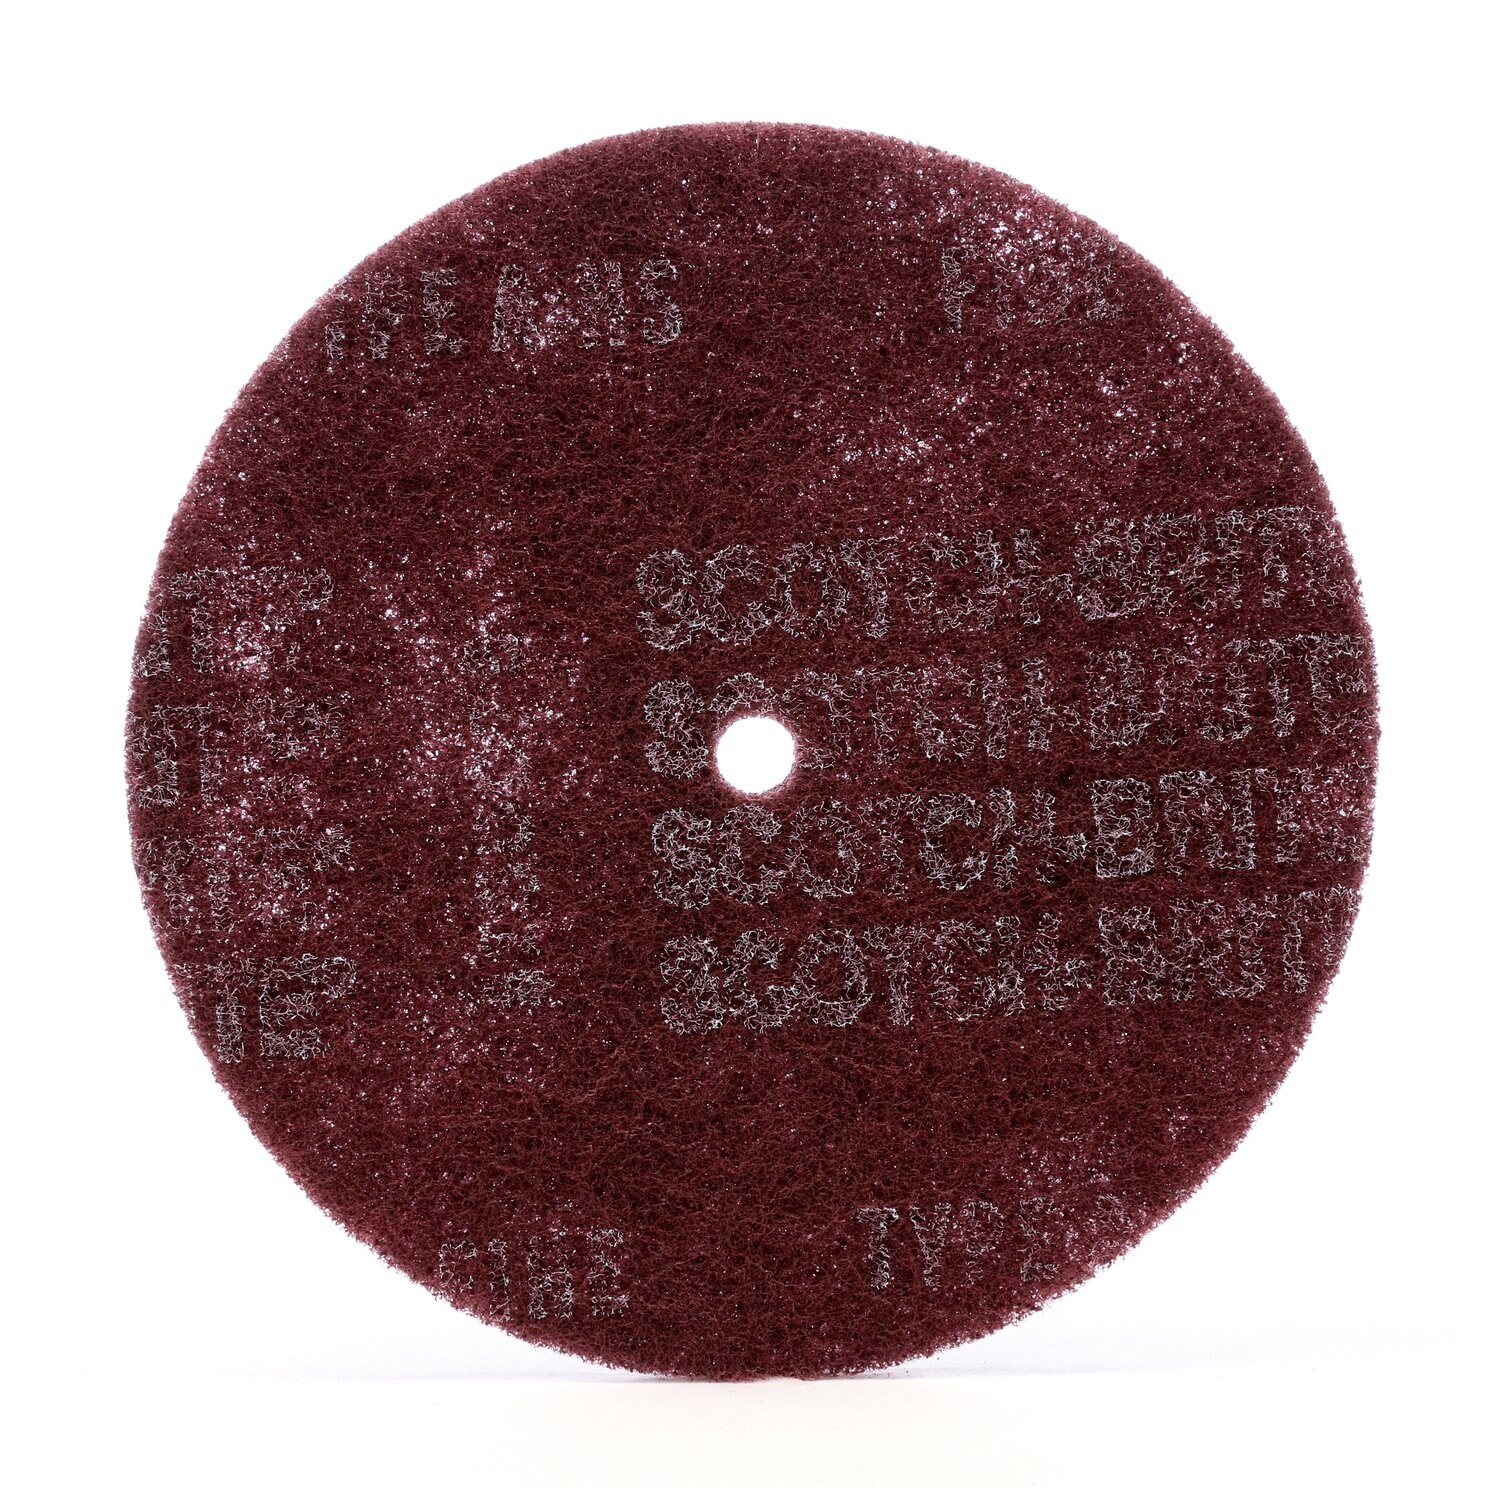 7010328538 - Scotch-Brite High Strength Disc, HS-DC, A/O Very Fine, 8 in x 1 in, 50
ea/Case